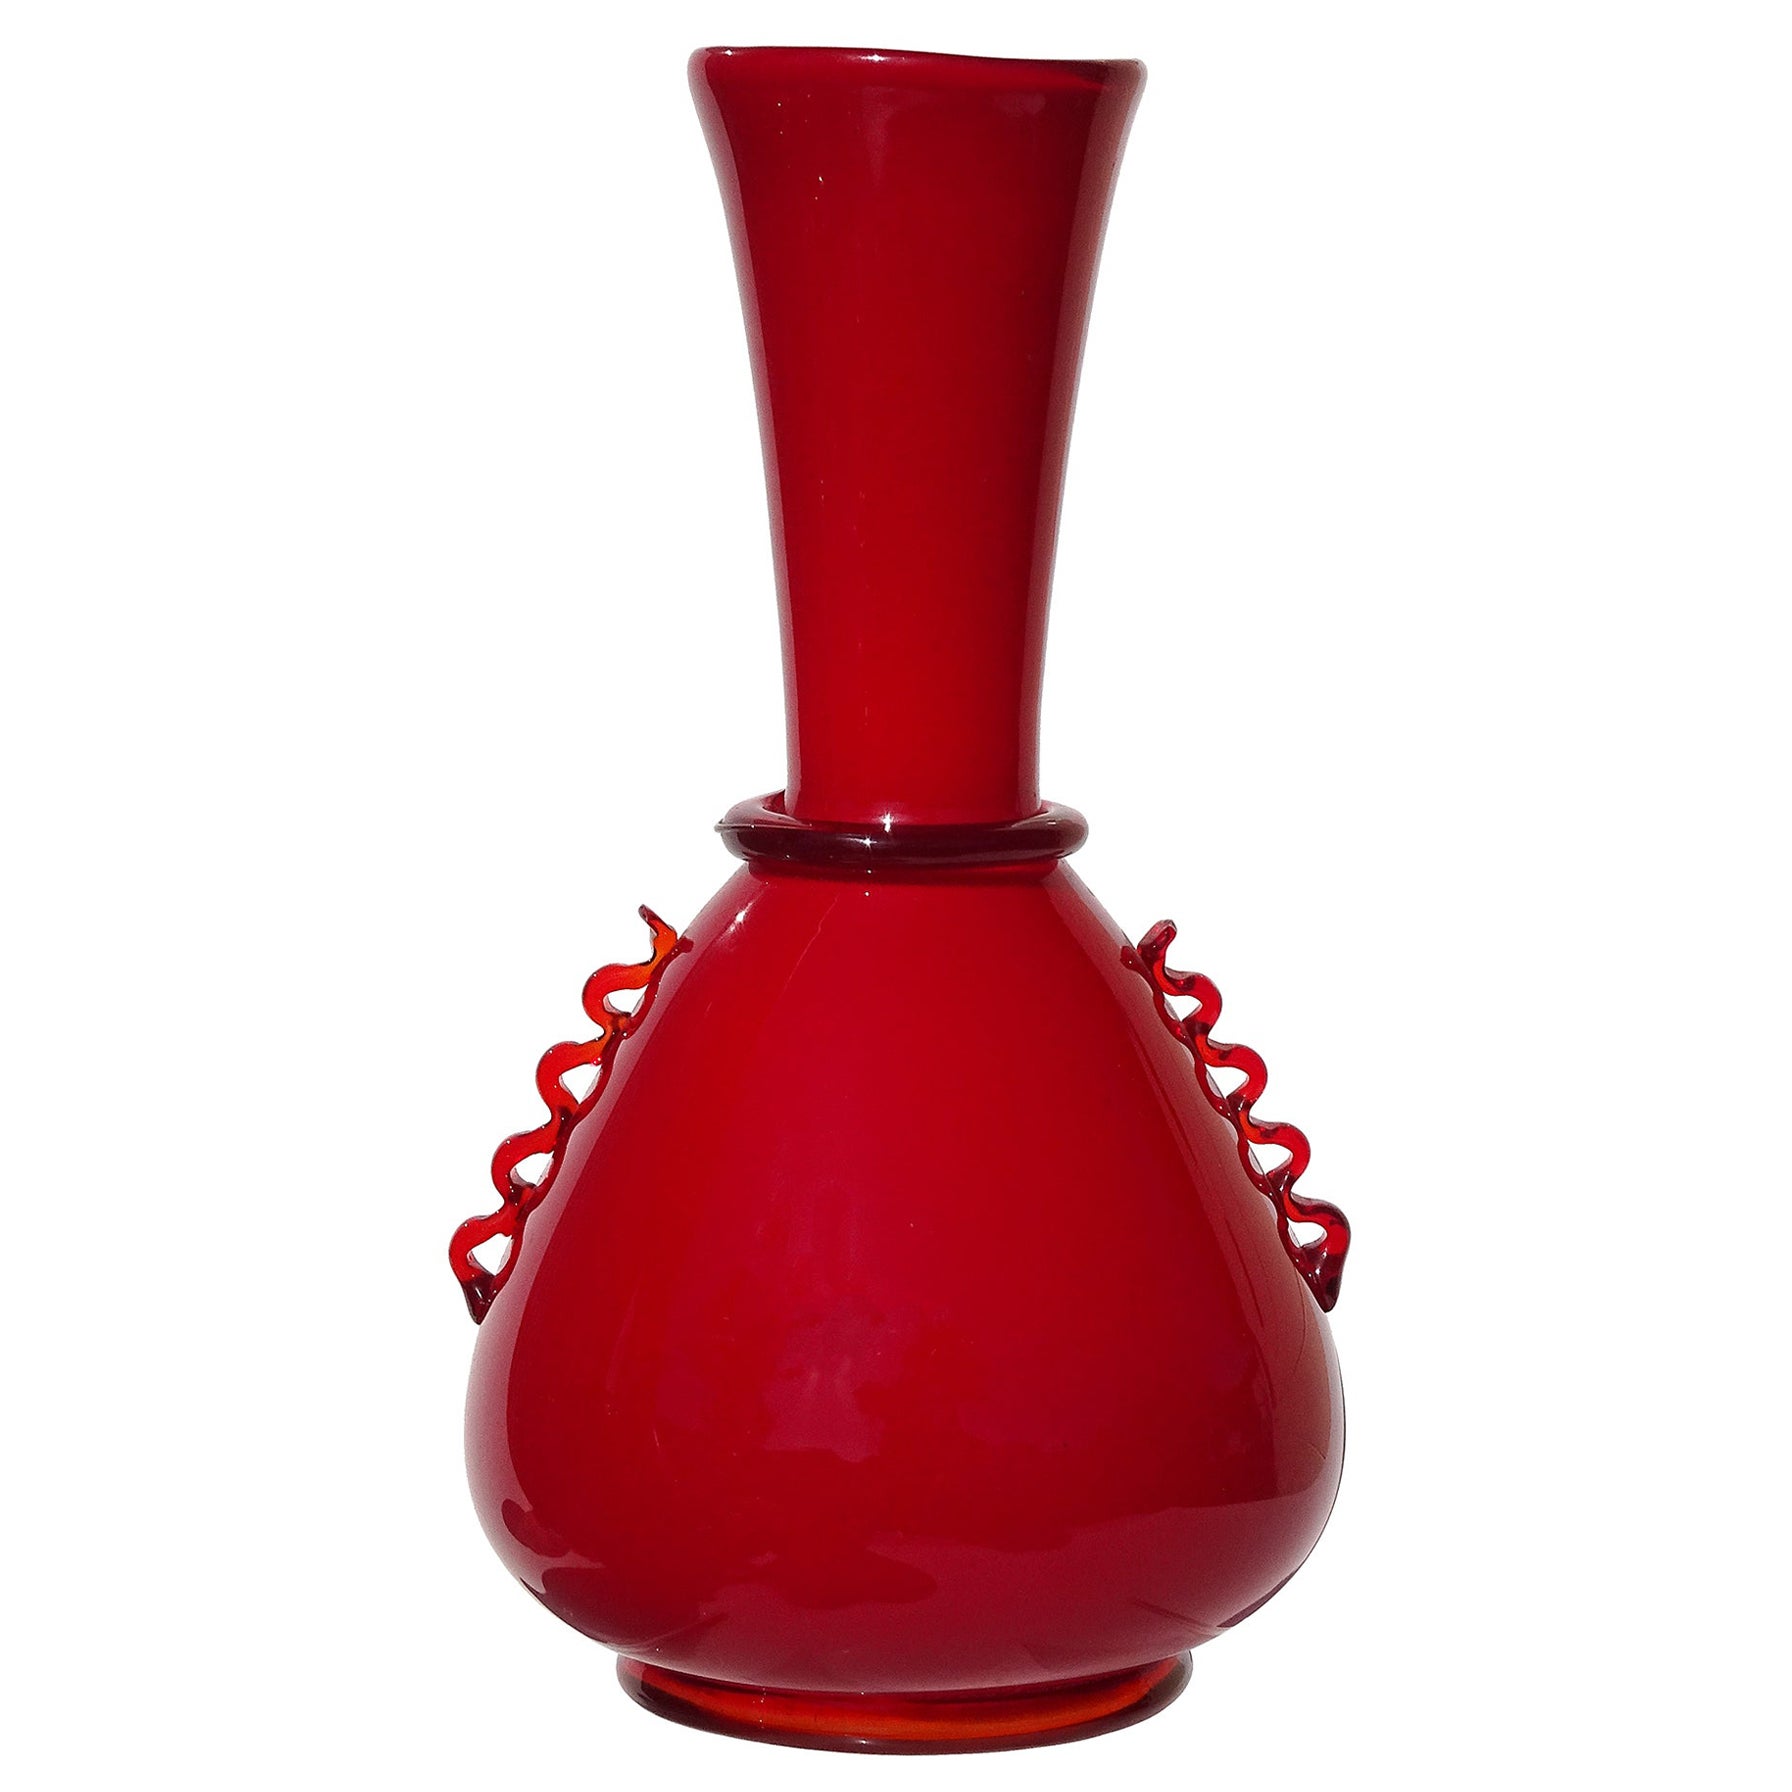 Murano Vetrerie Artistiche Cirillo Maschio 1930s Red Italian Art Deco Glass Vase For Sale